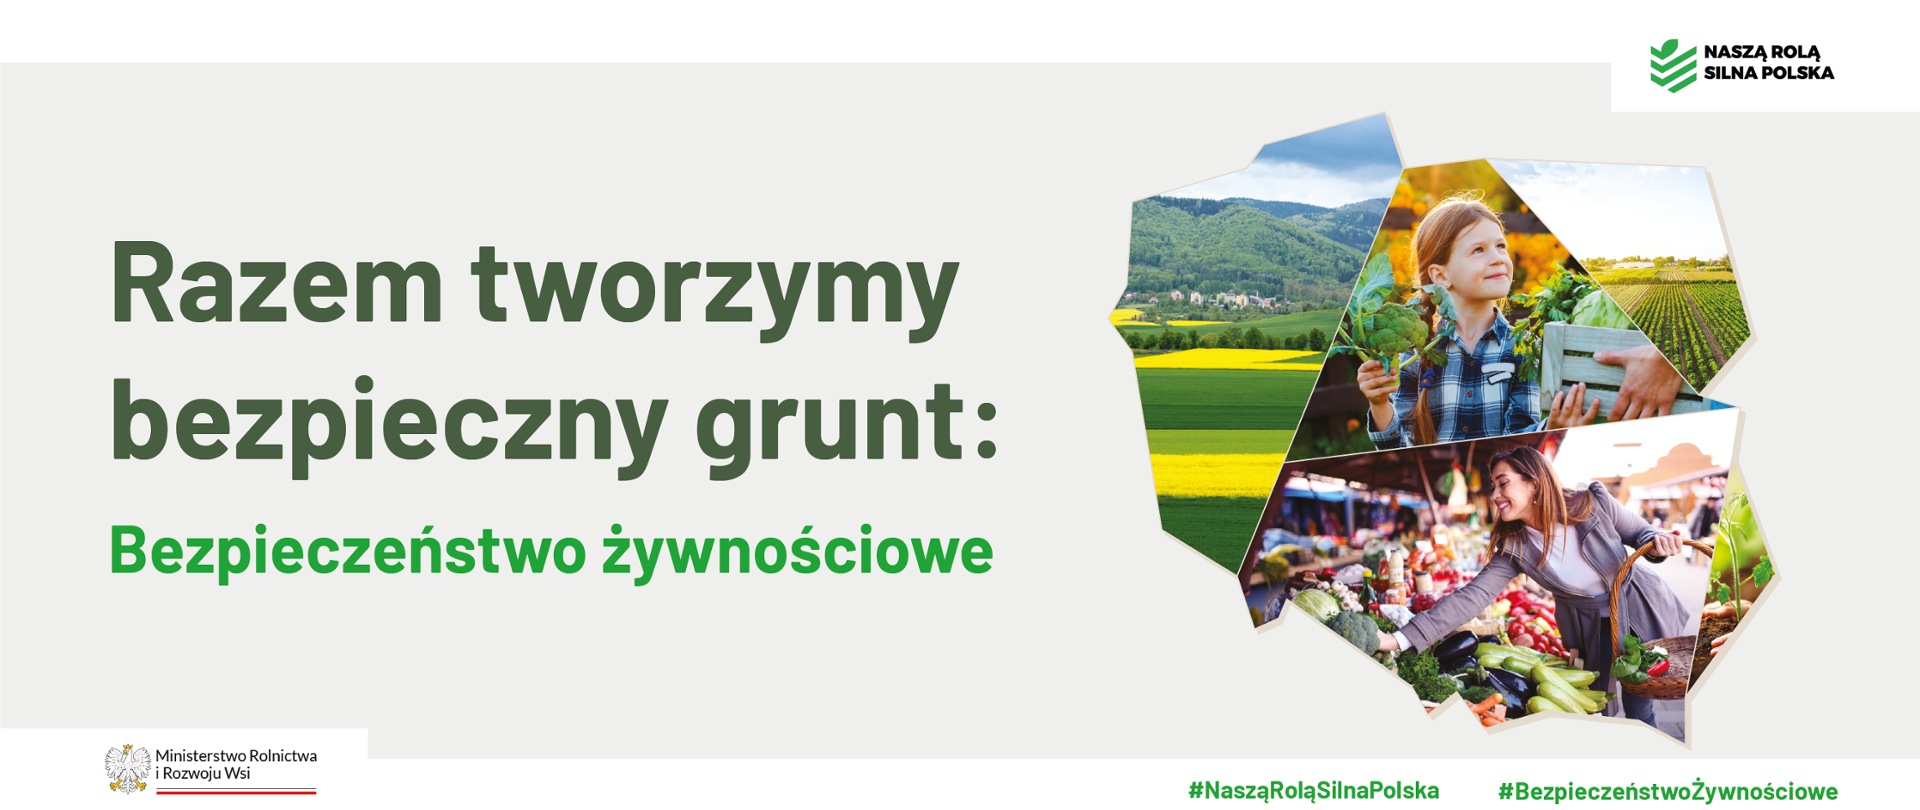 Na jasnym tle napis: Razem tworzymy bezpieczny grunt: Bezpieczeństwo żywnościowe. Po prawej stronie w kontur mapy Polski zamieszczone zdjęcia związane z rolnictwem.